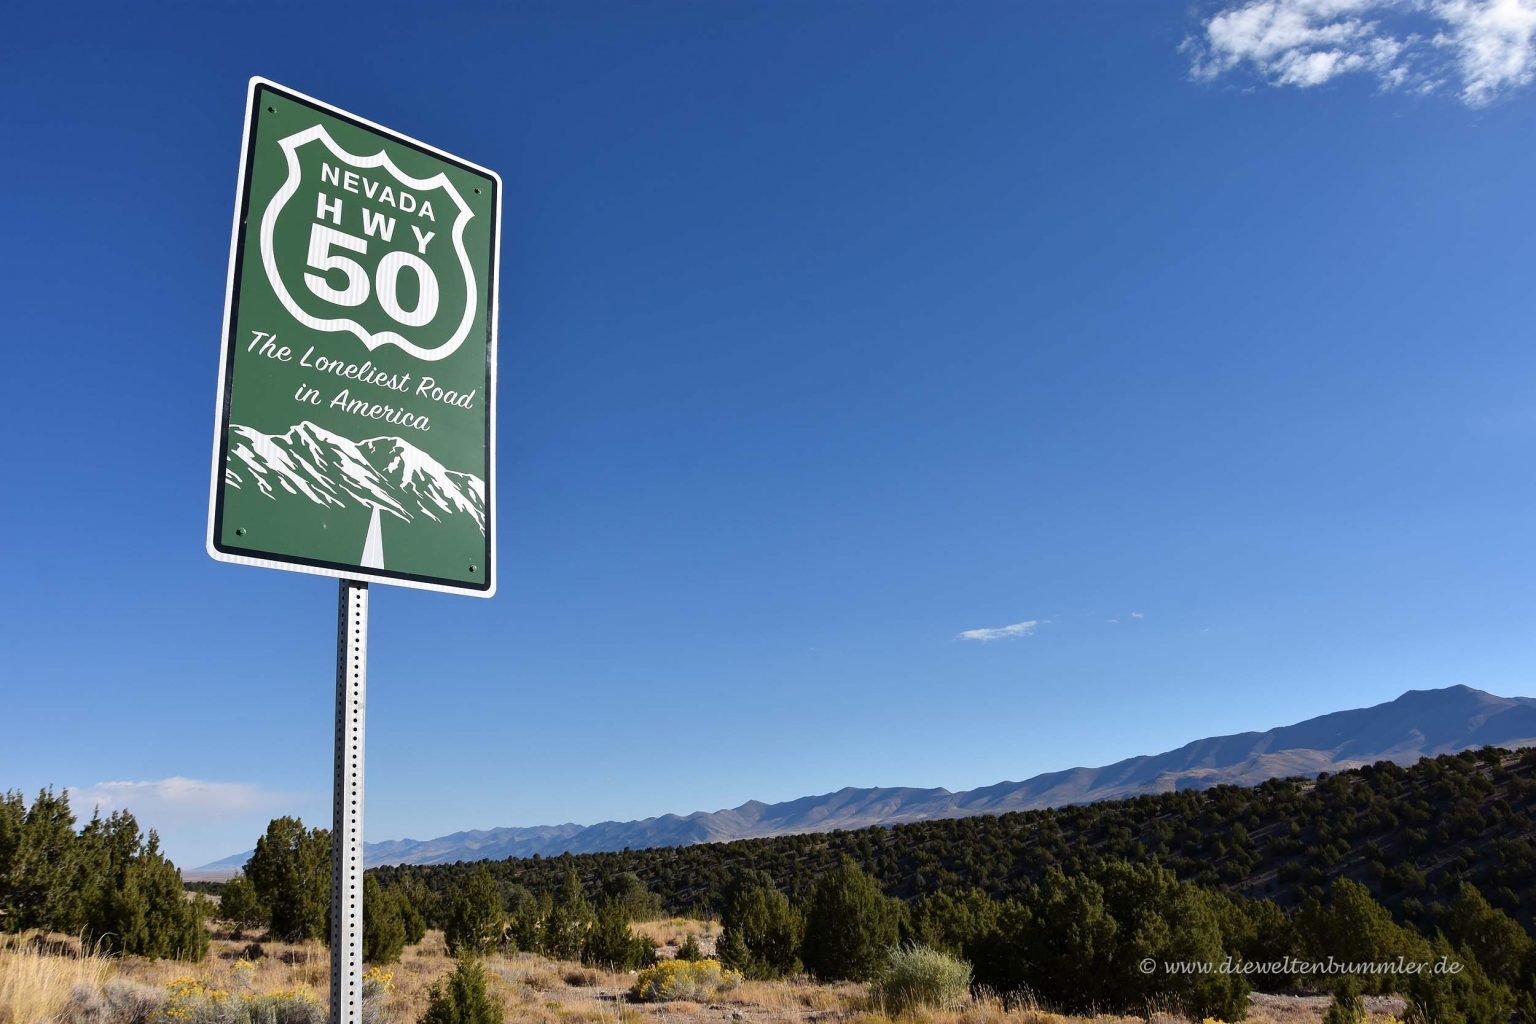 Highway 50